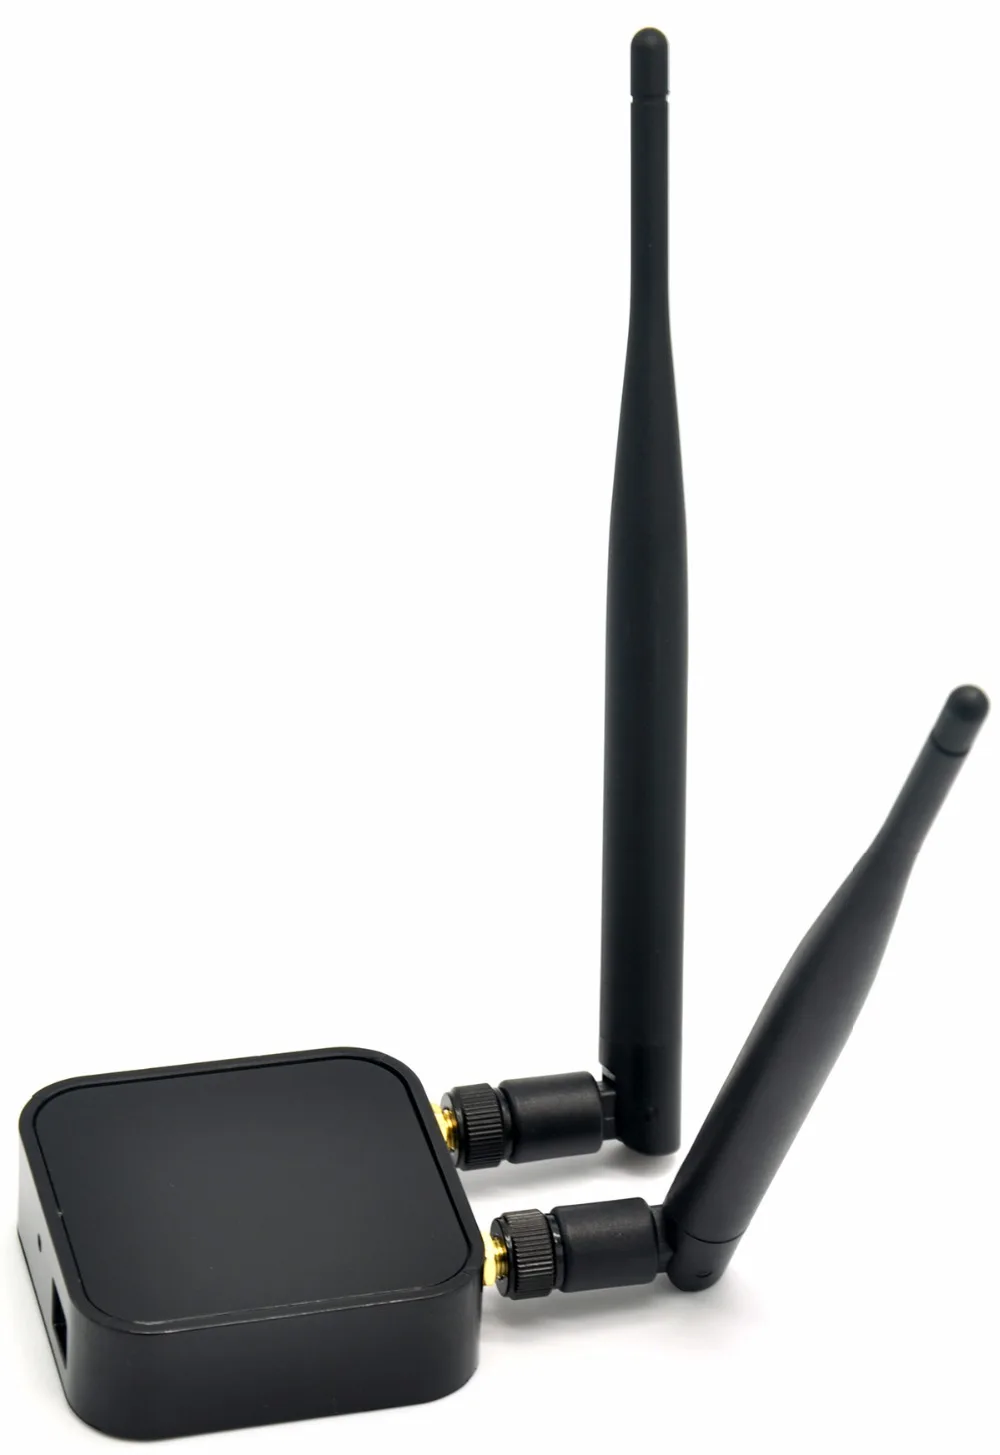 RaLink RT3572 2,4 ГГц и 5 ГГц 802.11a/b/g/n 300 Мбит/с беспроводной USB WiFi адаптер+ 2x 5dBi внешняя WiFi антенна для SamSung Smart tv